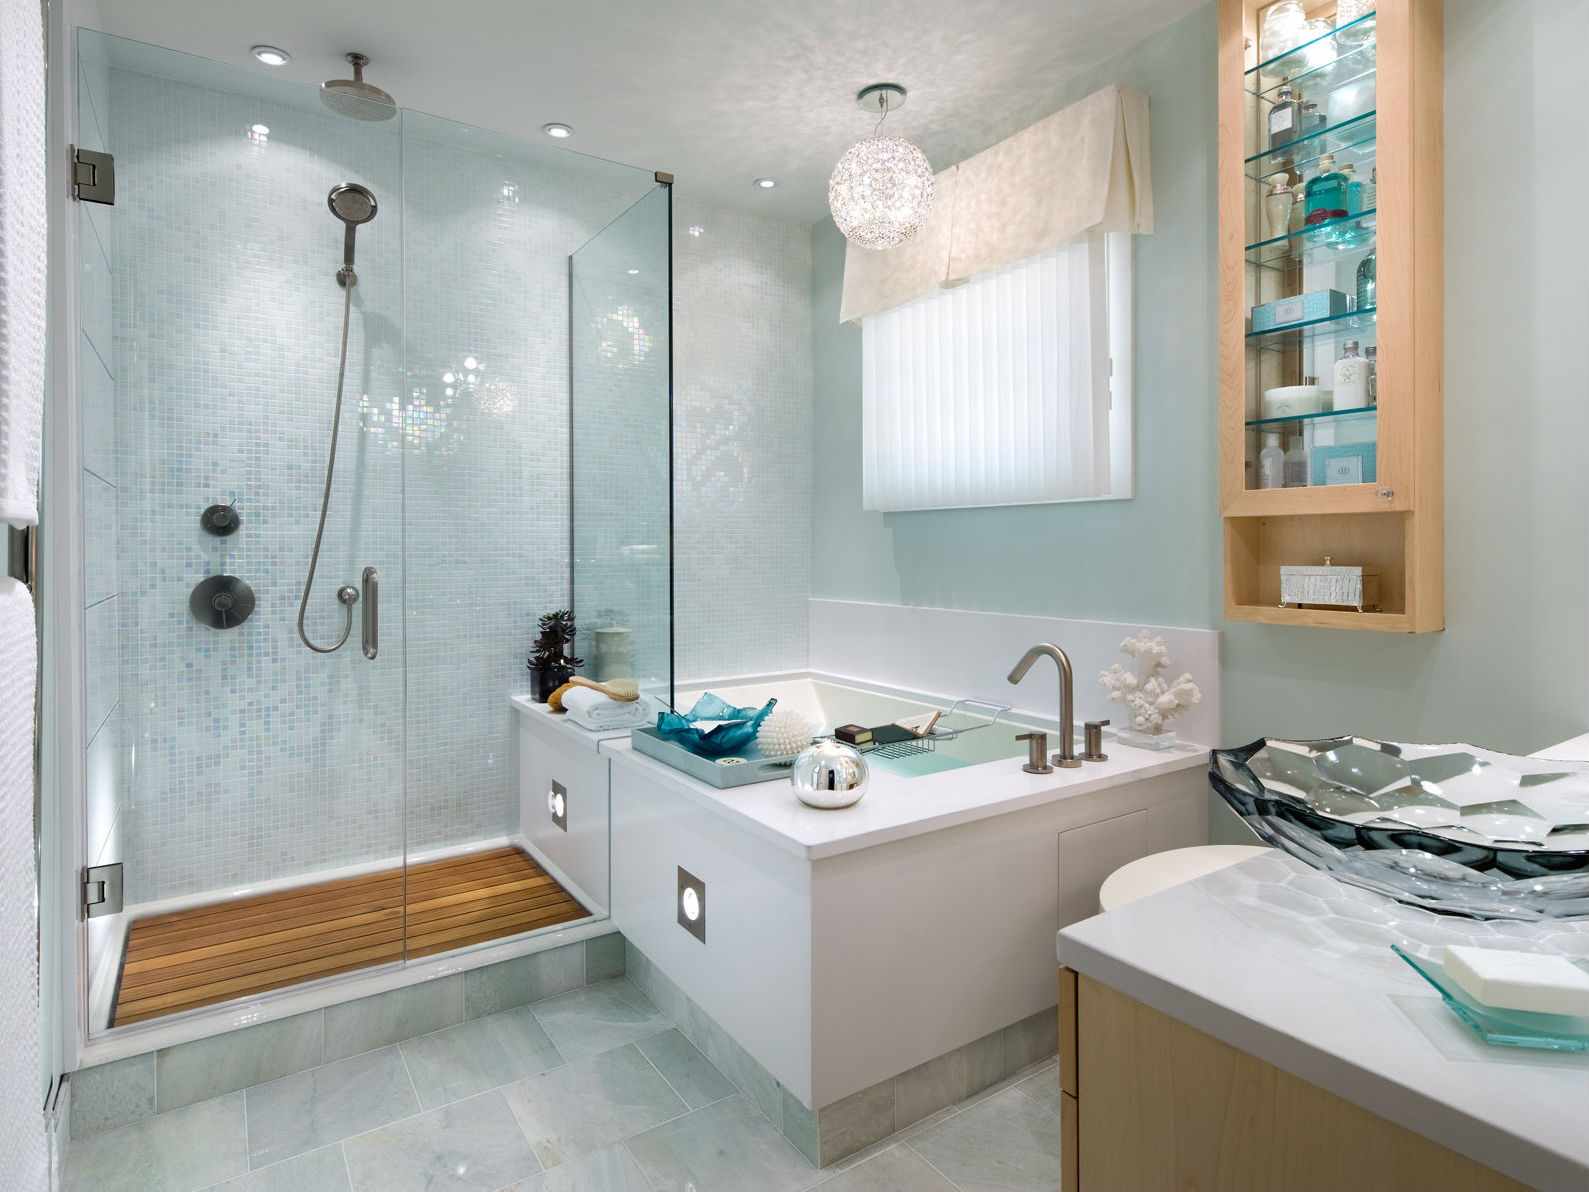 Príklad ľahkého dizajnu kúpeľne